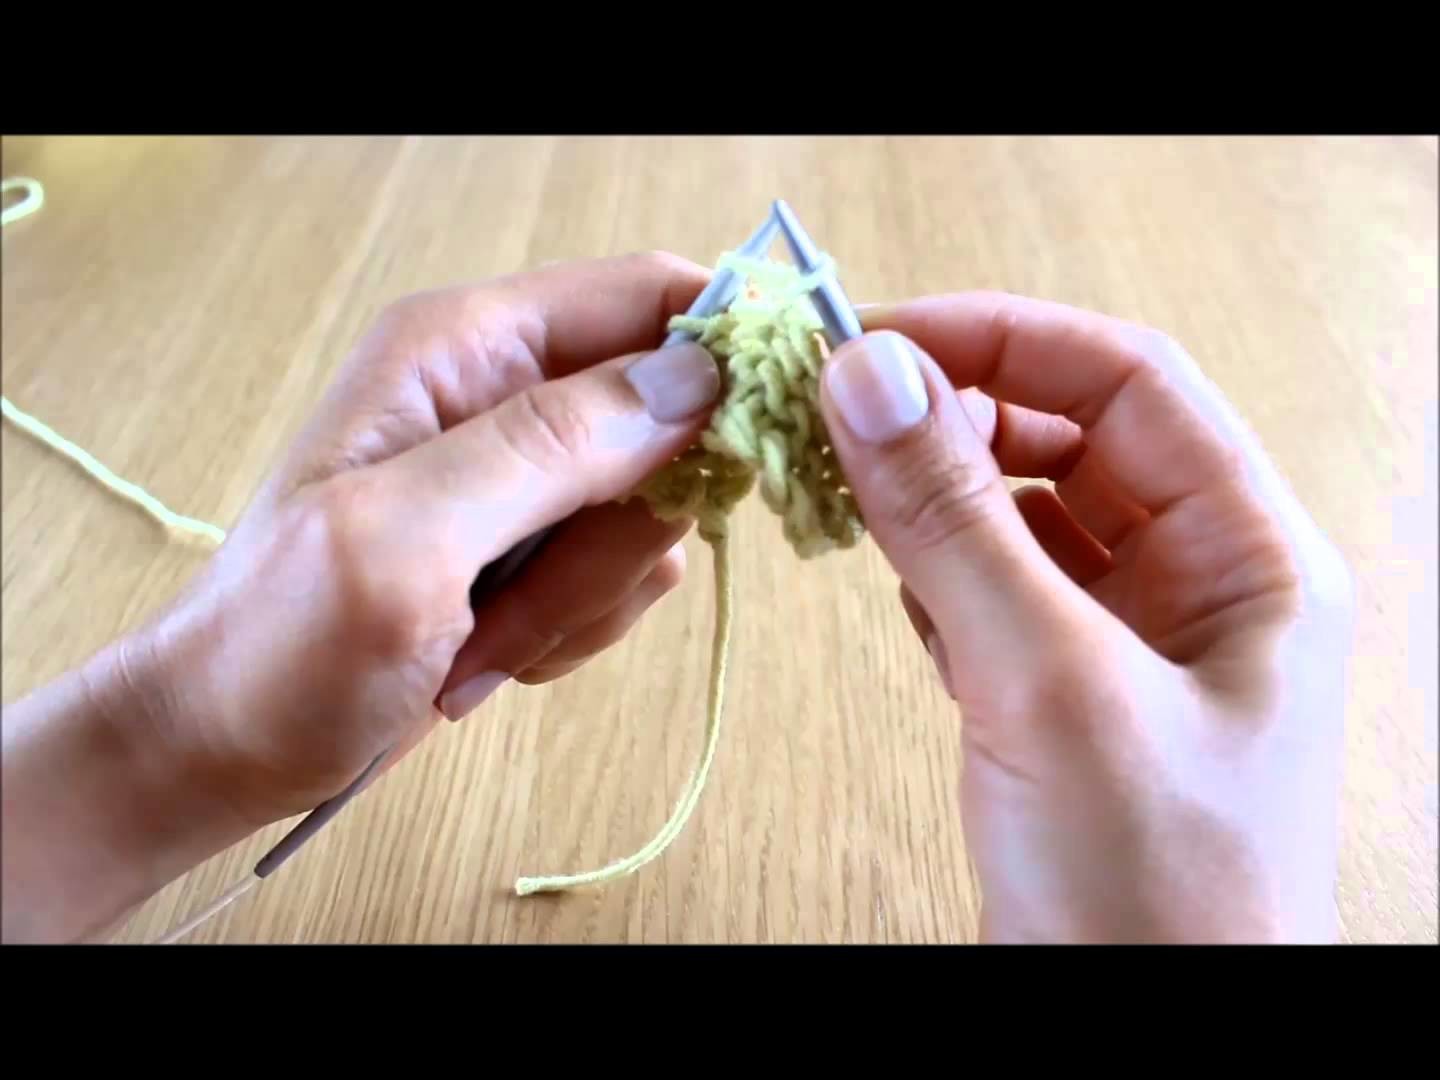 Curso de trico - Querido Tricot: tricotar 2 vezes a mesma malha (kfb - knit front and back)